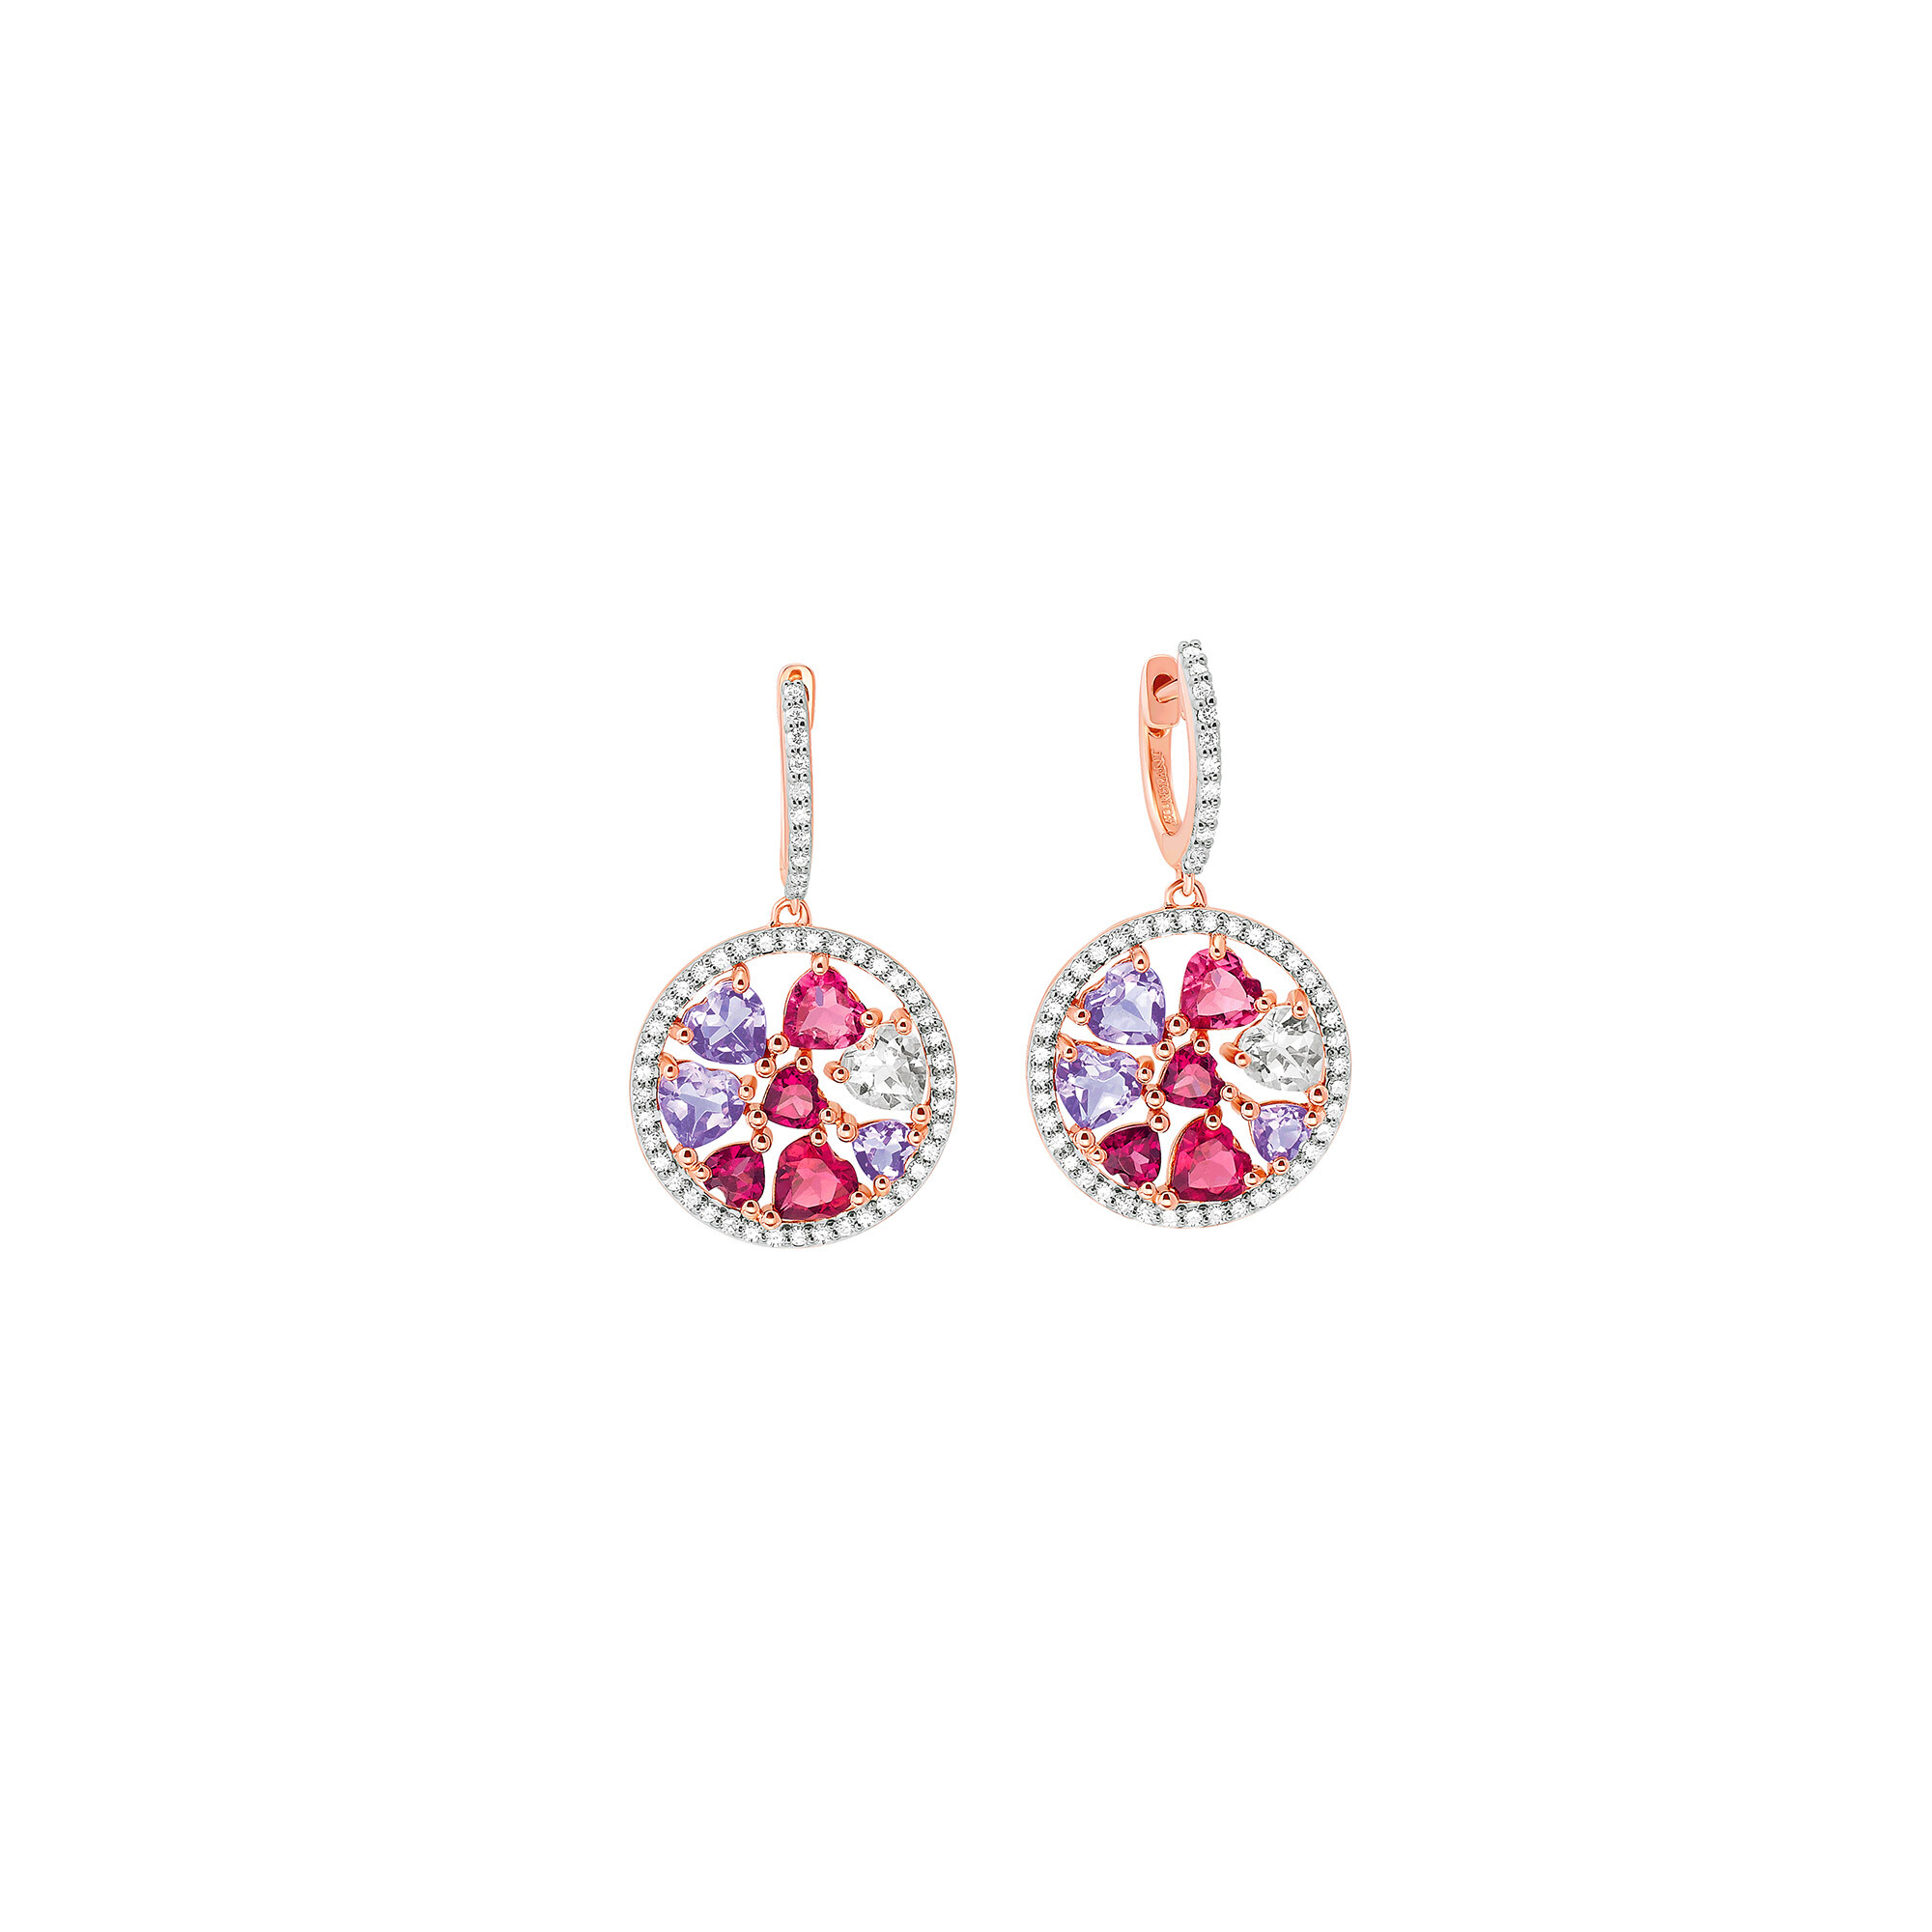 Boucles d'oreilles or rose, diamants améthyste lavande, morganite, tourmaline rose, rhodolite vue 1